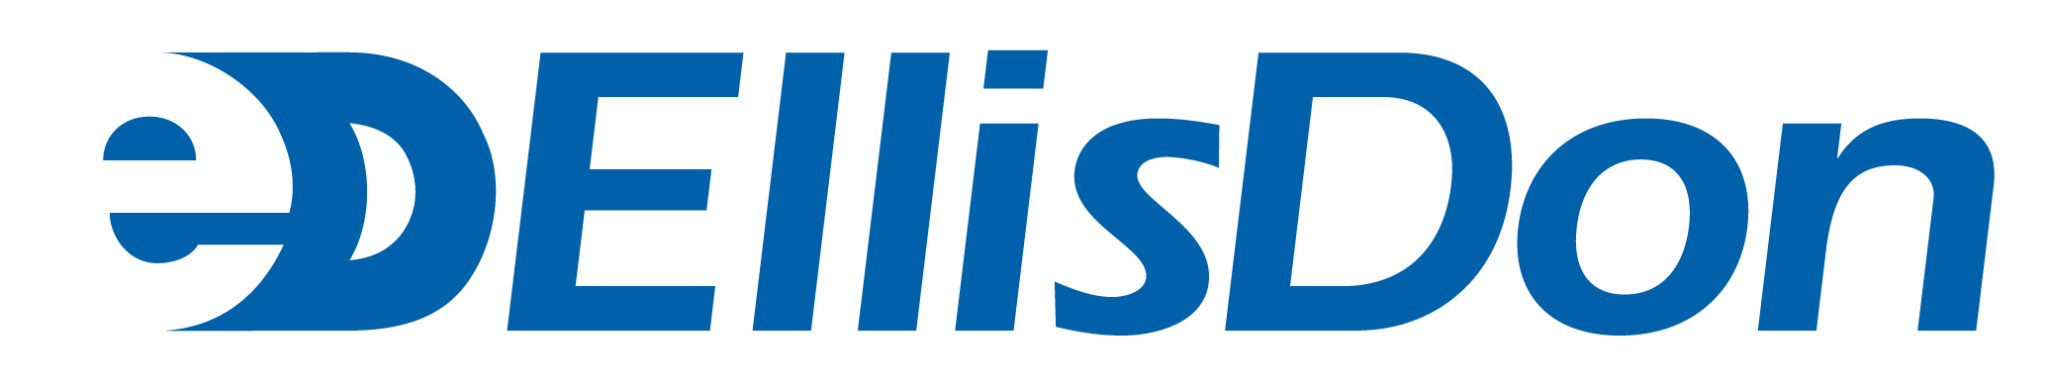 EllisDon Logo